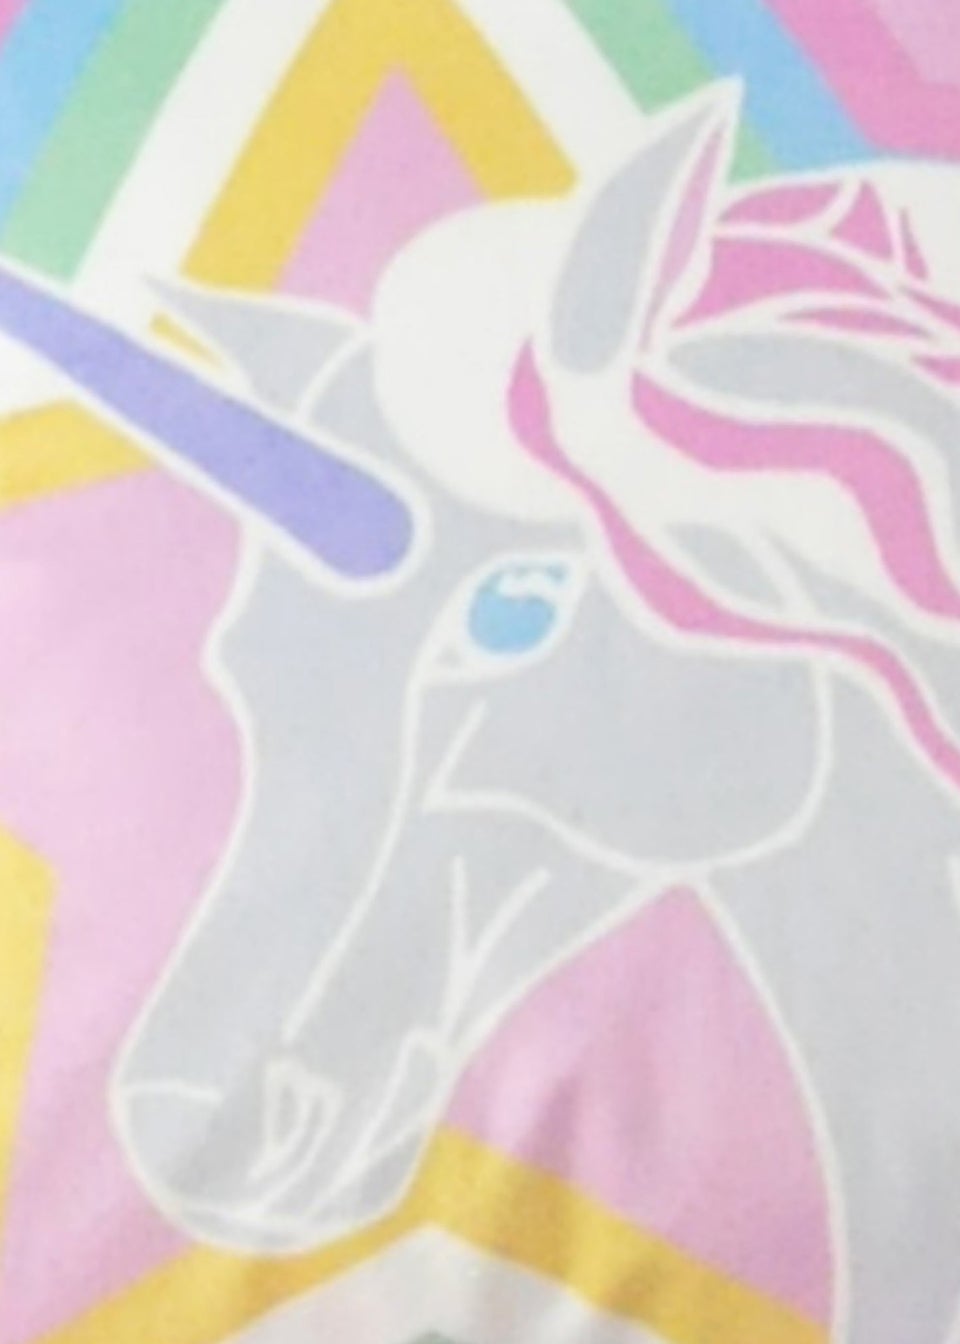 Bedlam Unicorn Velvet Filled Cushion